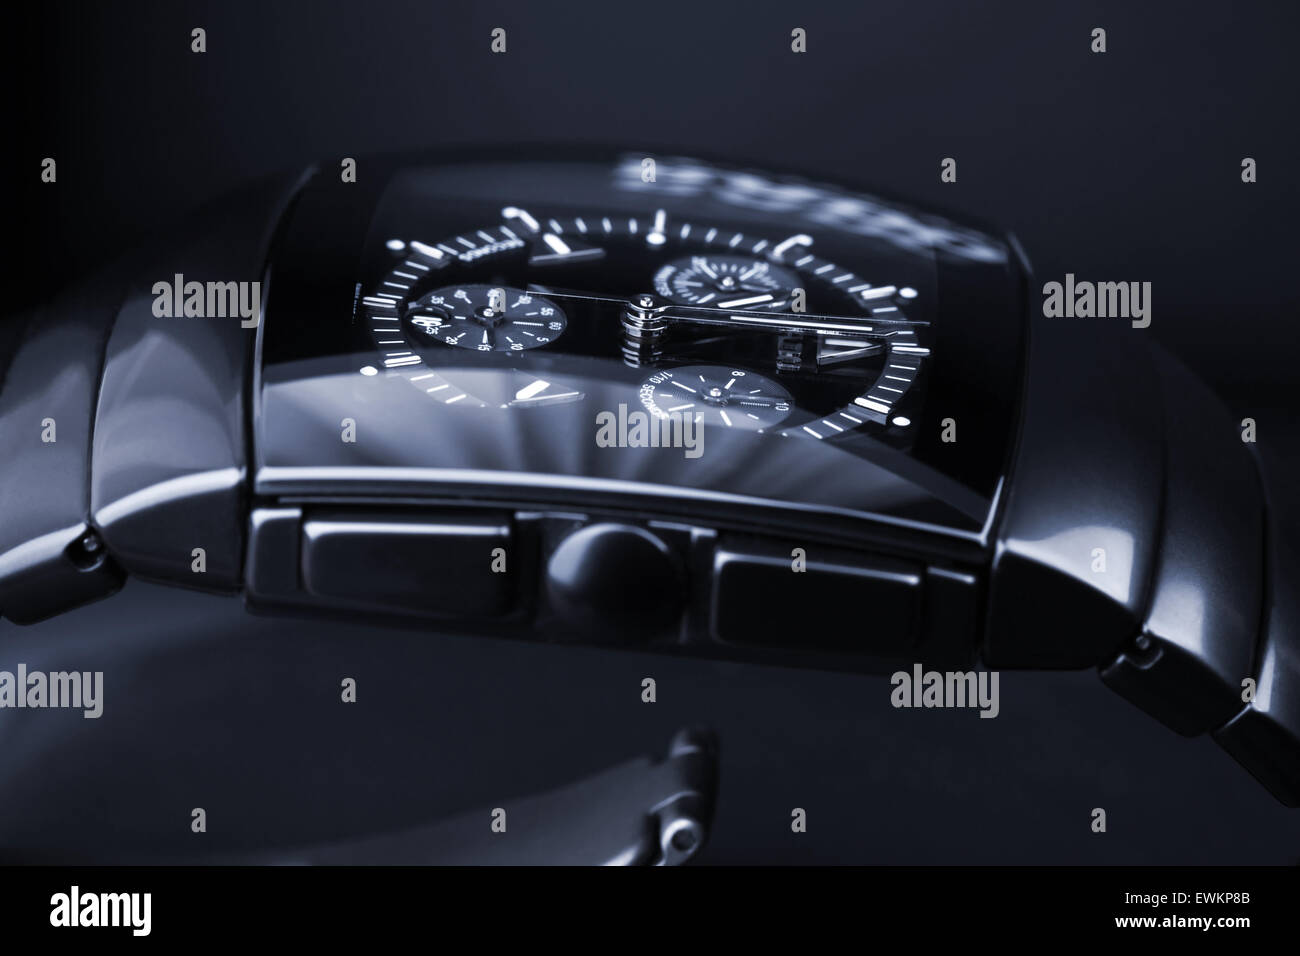 Saint-pétersbourg, Russie - le 18 juin 2015 : Rado Sintra Chrono établit sur fond sombre, Mens Chronograph Watch Banque D'Images